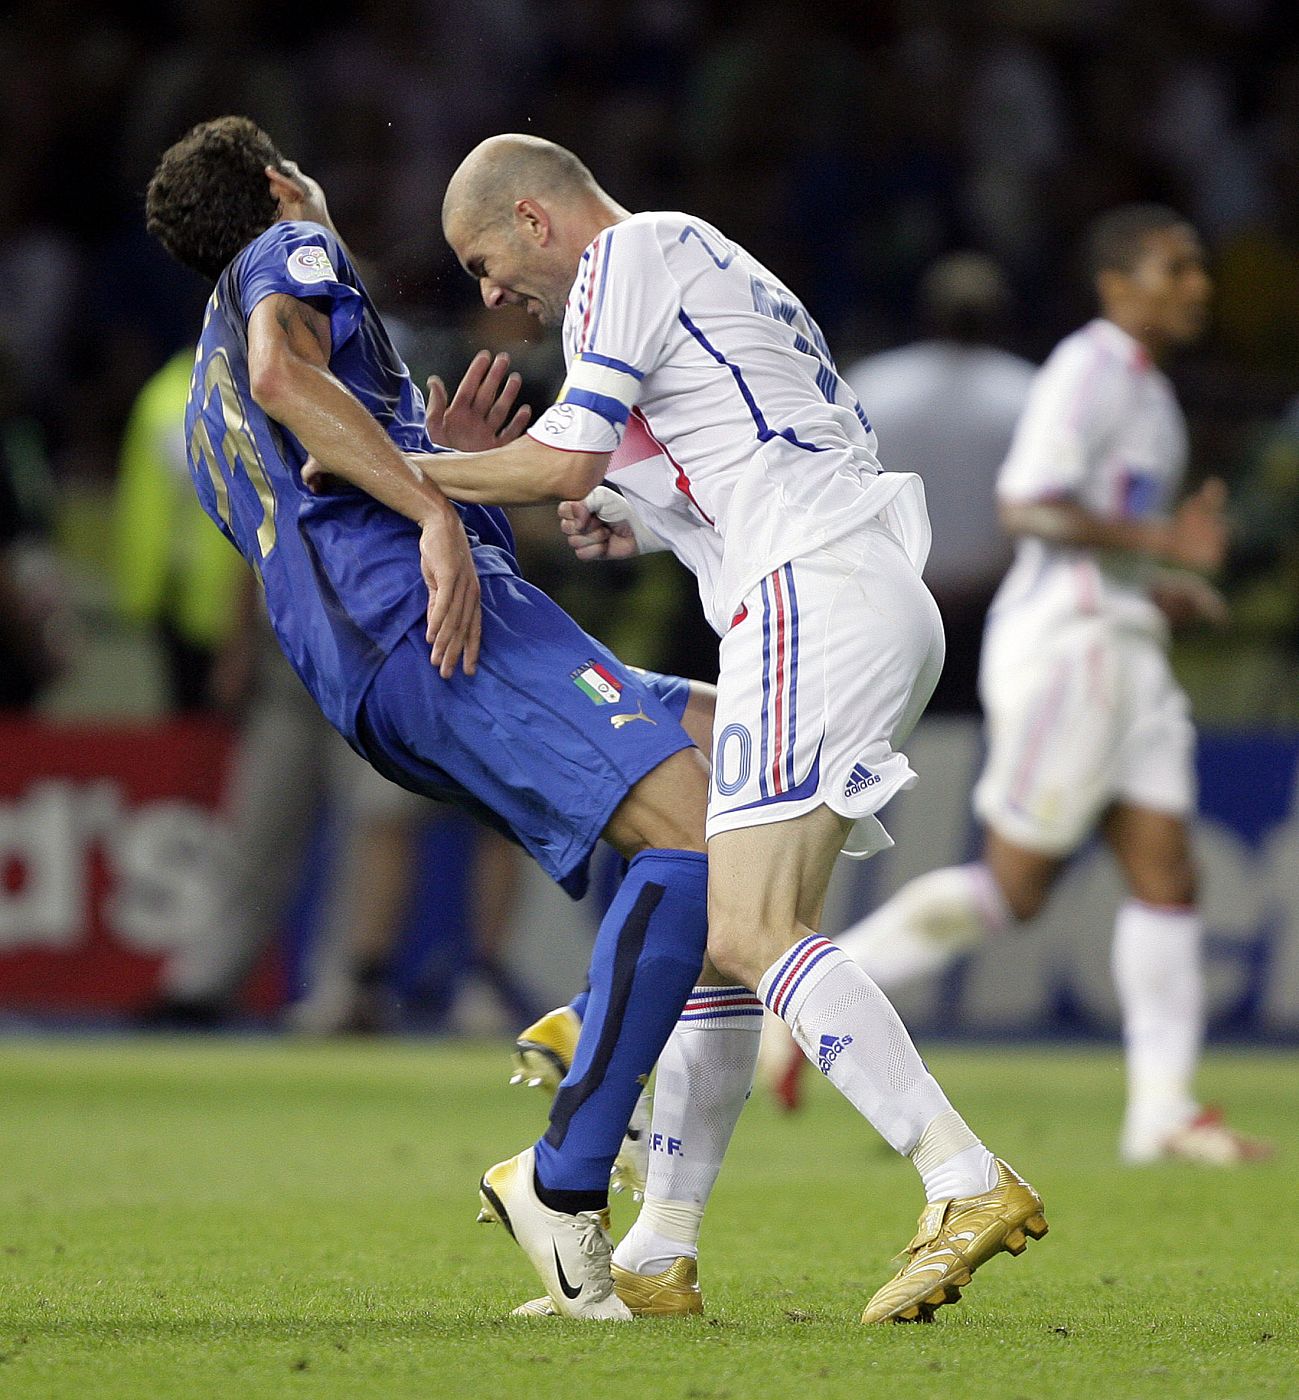 ZIDANE, ÚLTIMO ACTO DE UNA TRAGEDIA. Como un héroe clásico, Zinedine Zidane, tuvo un dramático final de carrera. La final de la Copa del Mundo de 2006 en Alemania será recordada por su cabezazo a Materazzi.